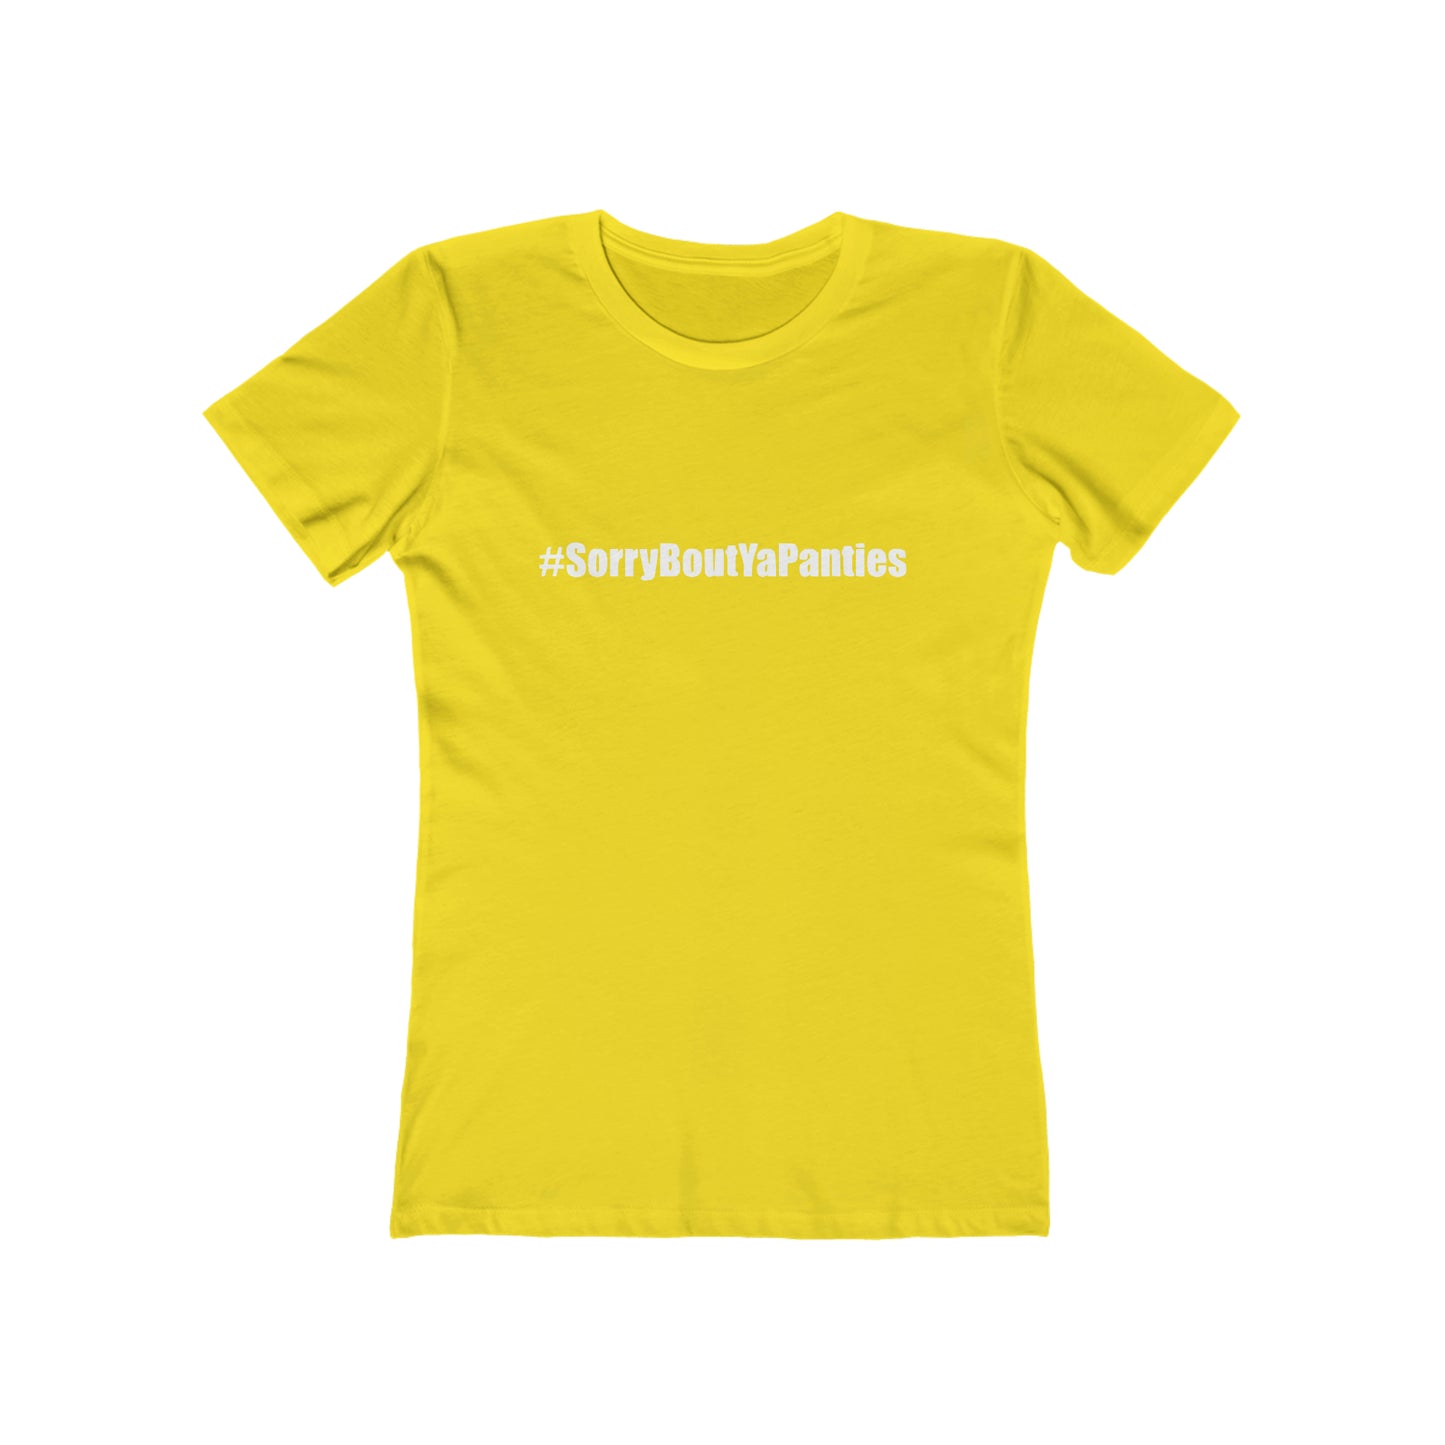 Sorry bout ya panties - Women's T-shirt